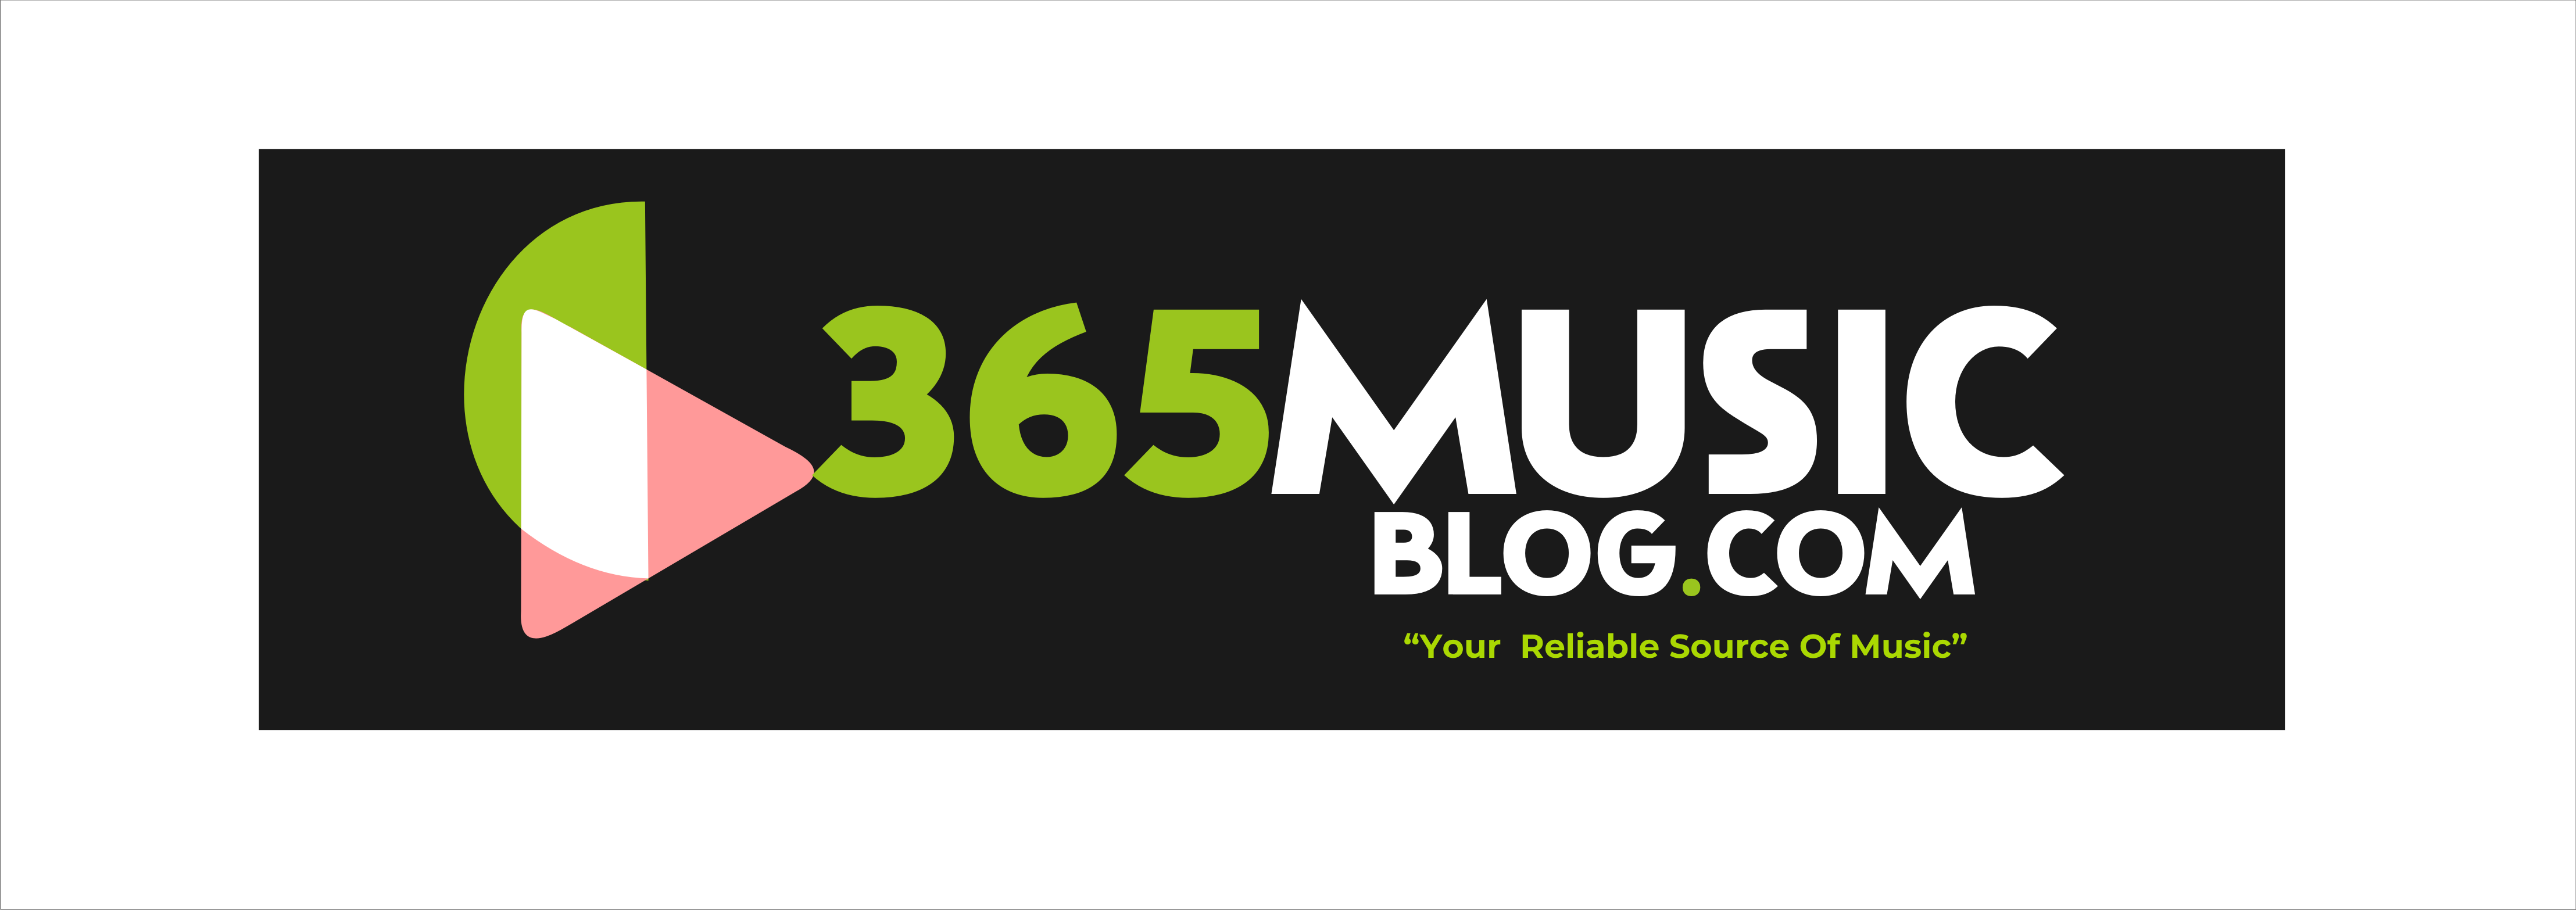 365musicblog.com